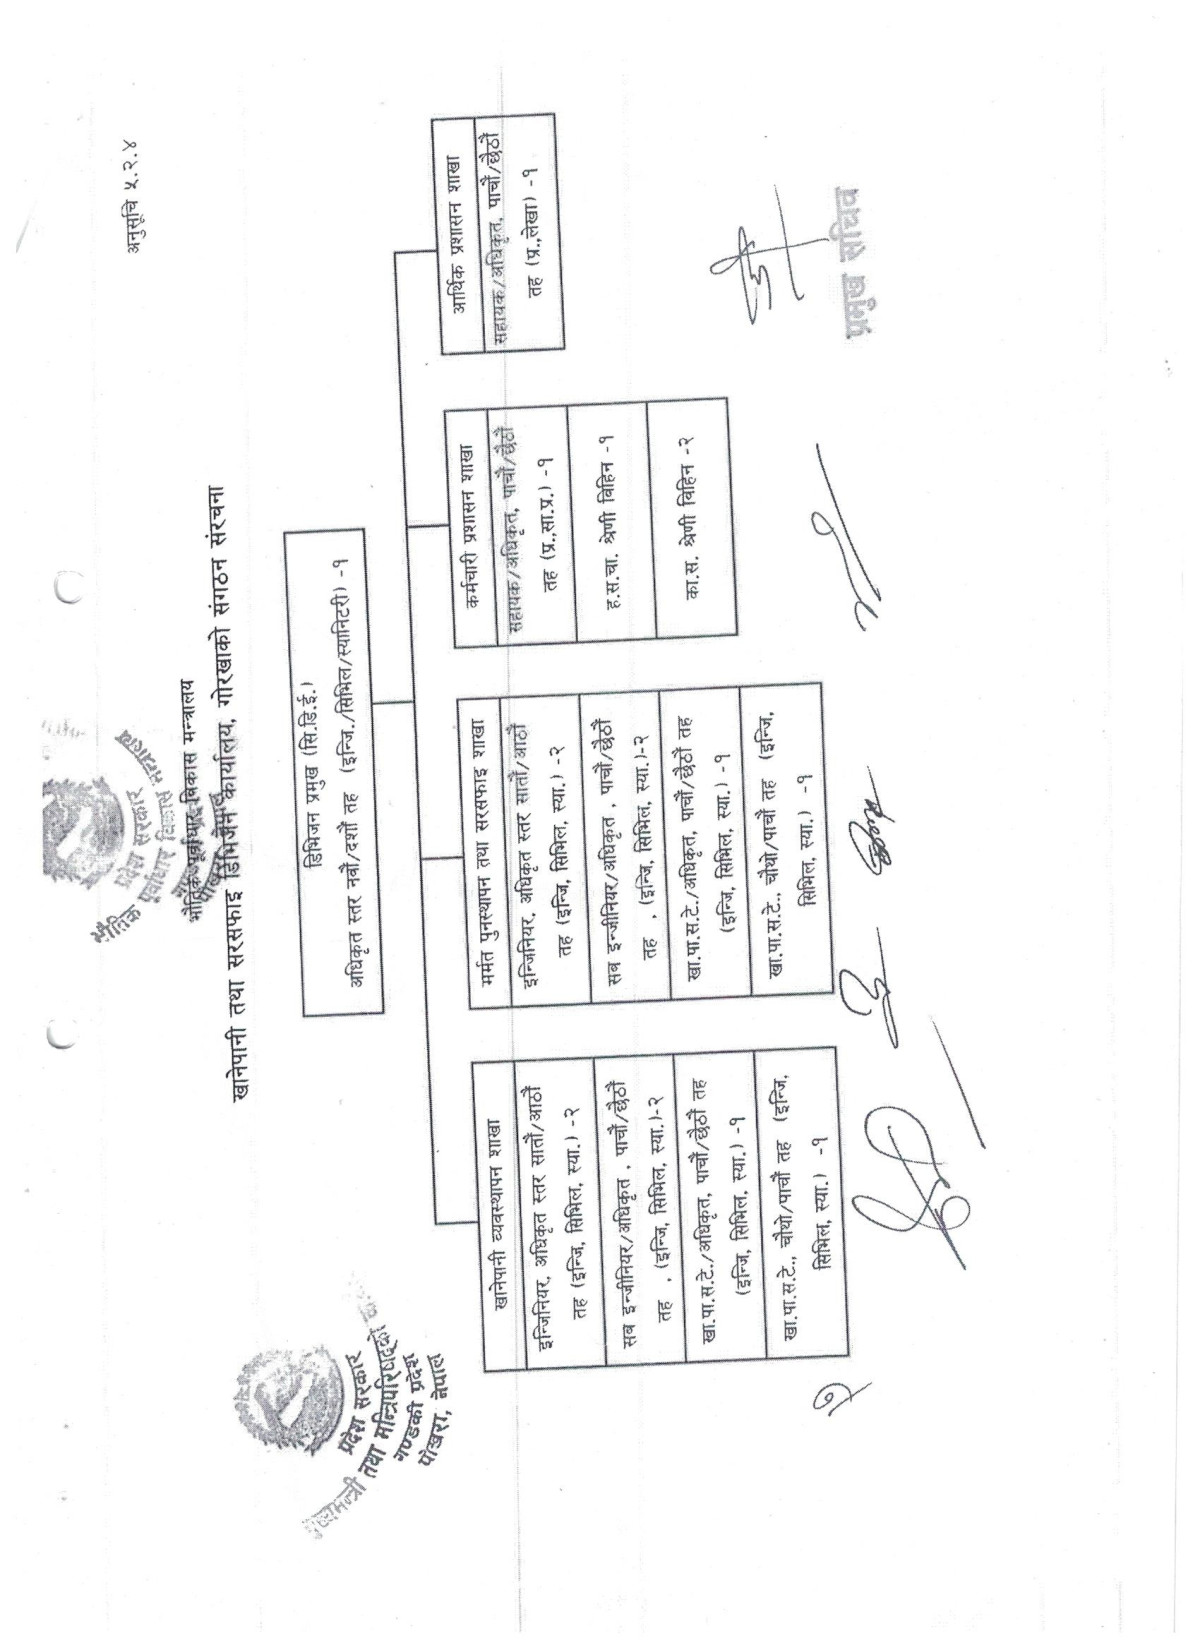 Organization Structure Chart of खानेपानी तथा सरसफाइ डिभिजन कार्यालय, गोरखा